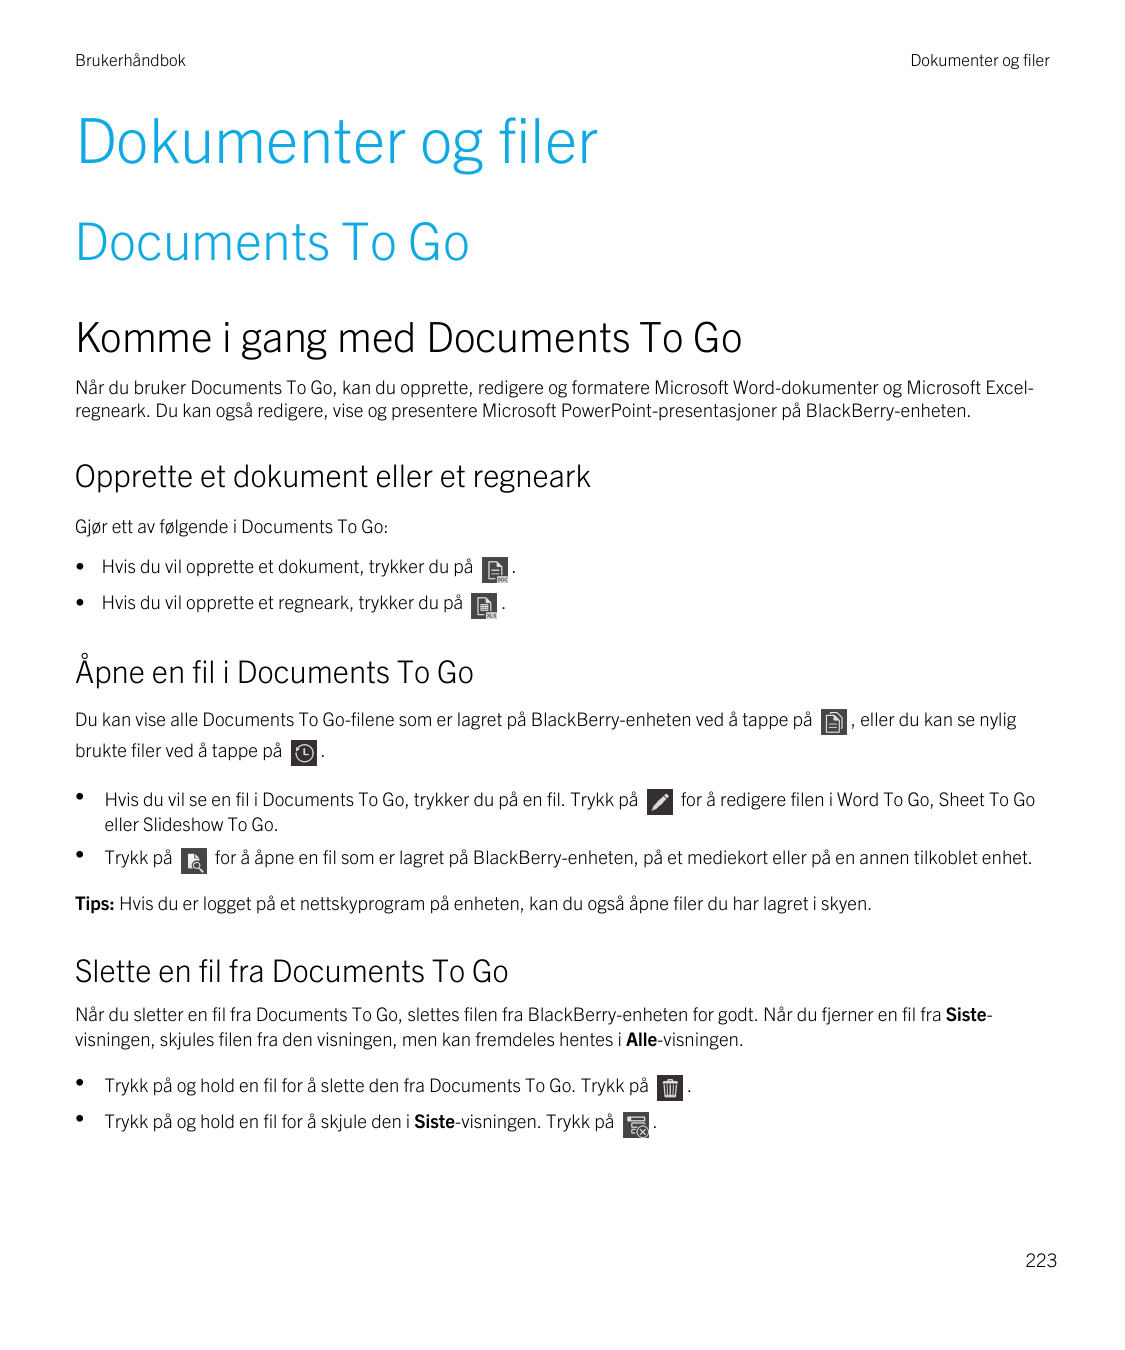 BrukerhåndbokDokumenter og filerDokumenter og filerDocuments To GoKomme i gang med Documents To GoNår du bruker Documents To Go,